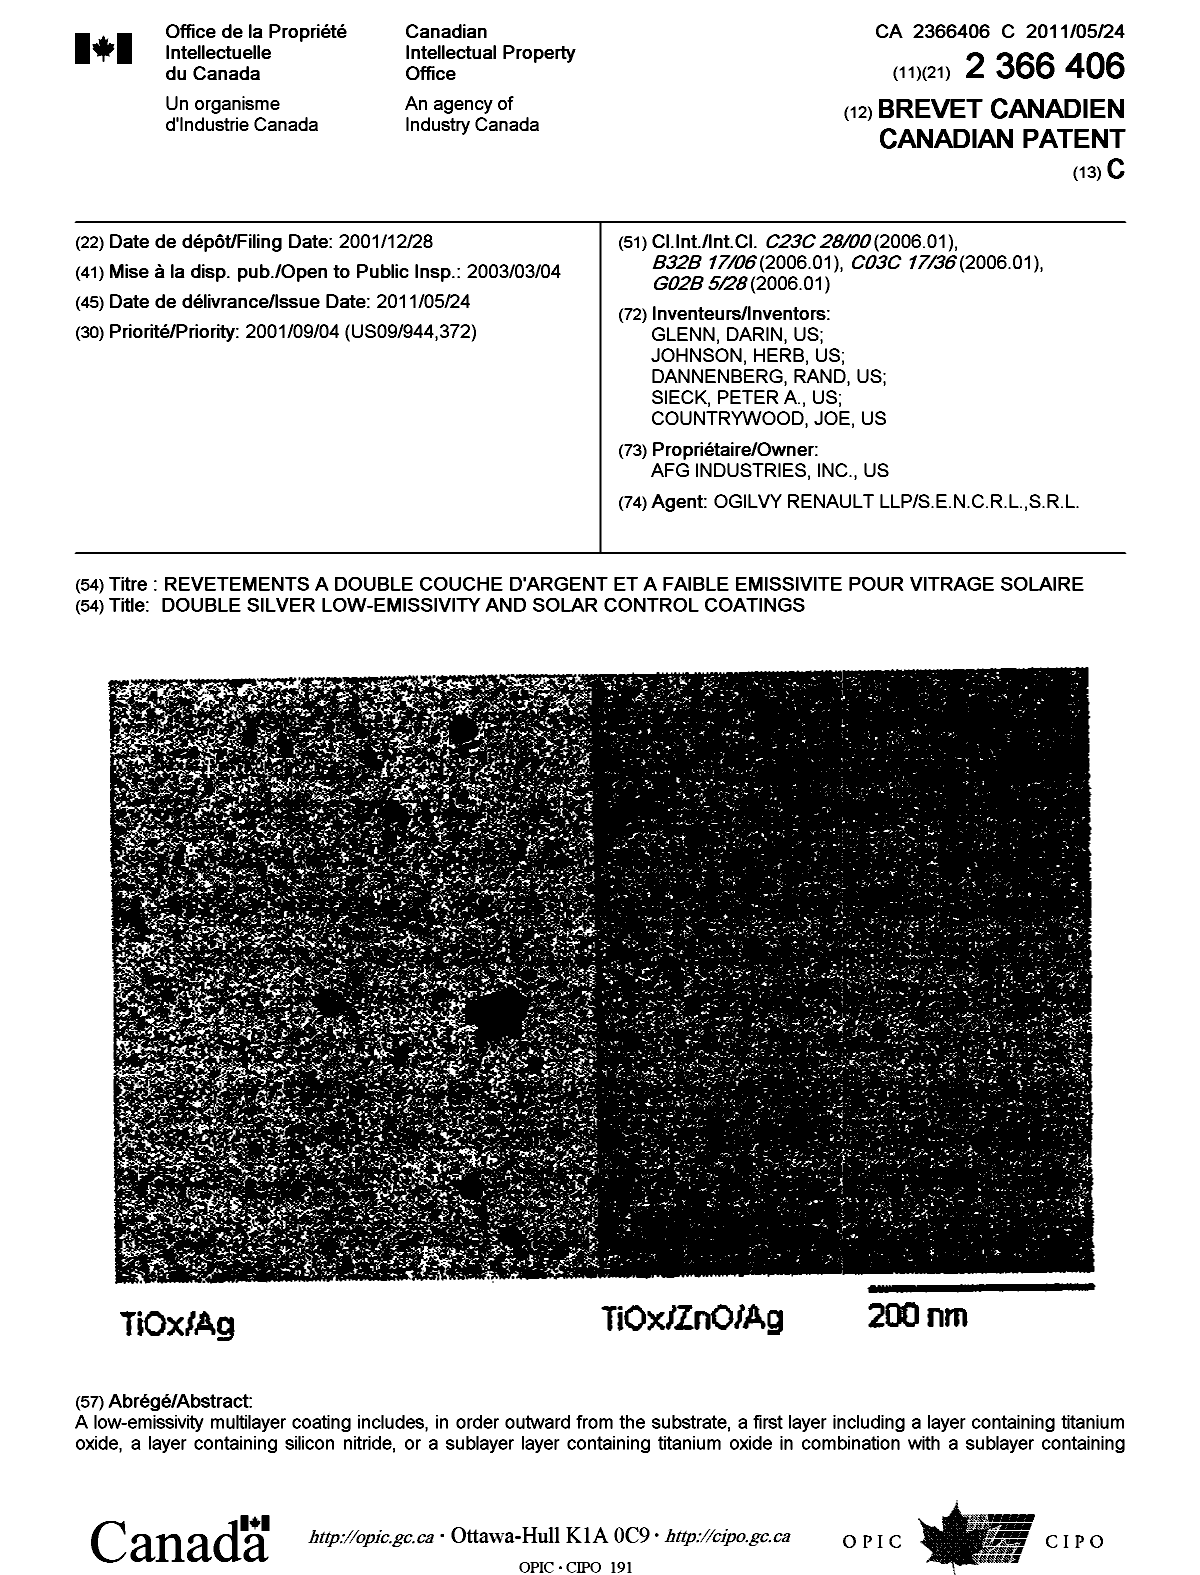 Document de brevet canadien 2366406. Page couverture 20110420. Image 1 de 2